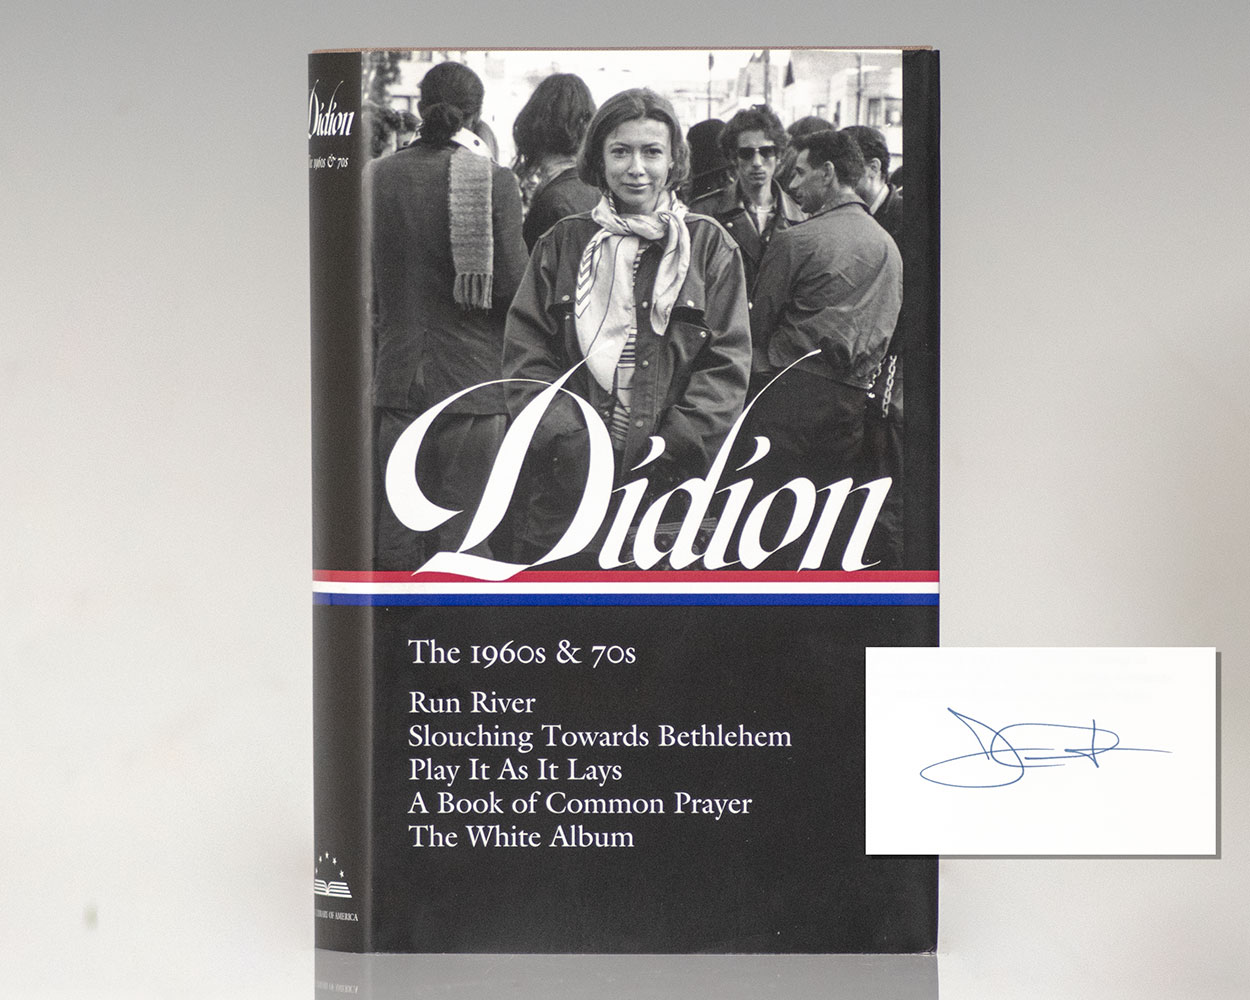 Joan Didion: The 1960s & 70s (LOA #325): Run River / Slouching